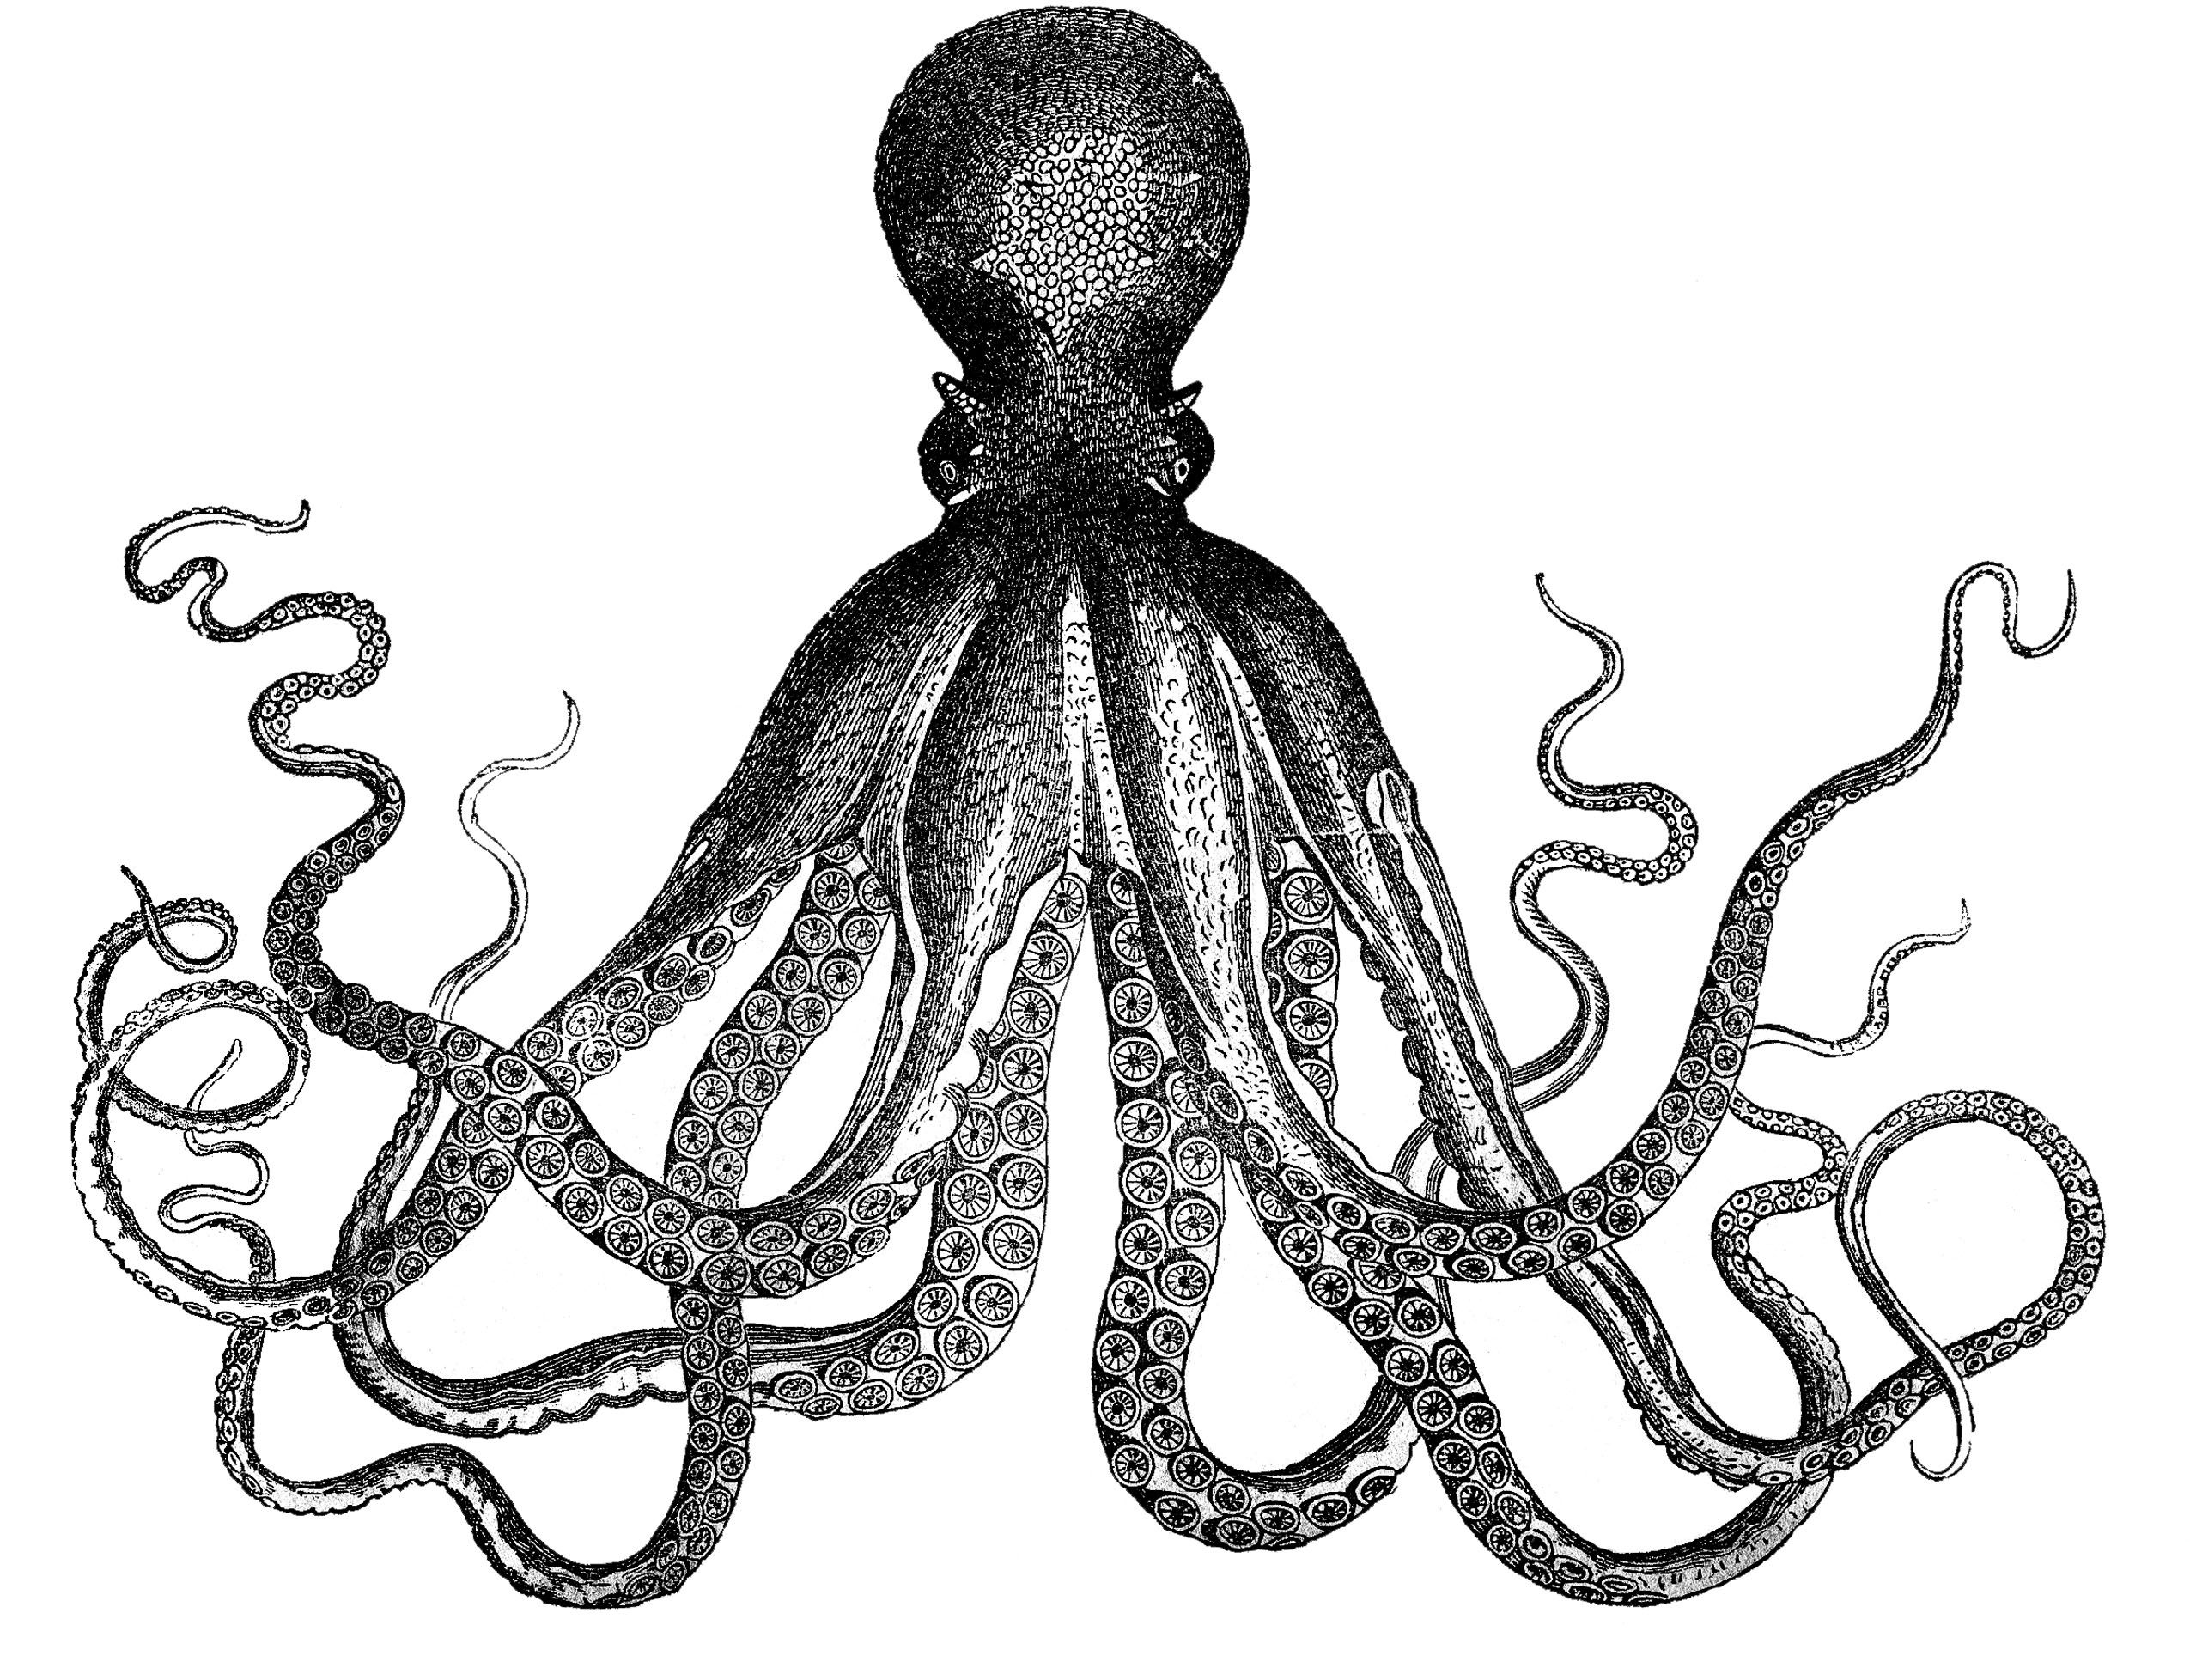  clip art images. Clipart octopus vintage